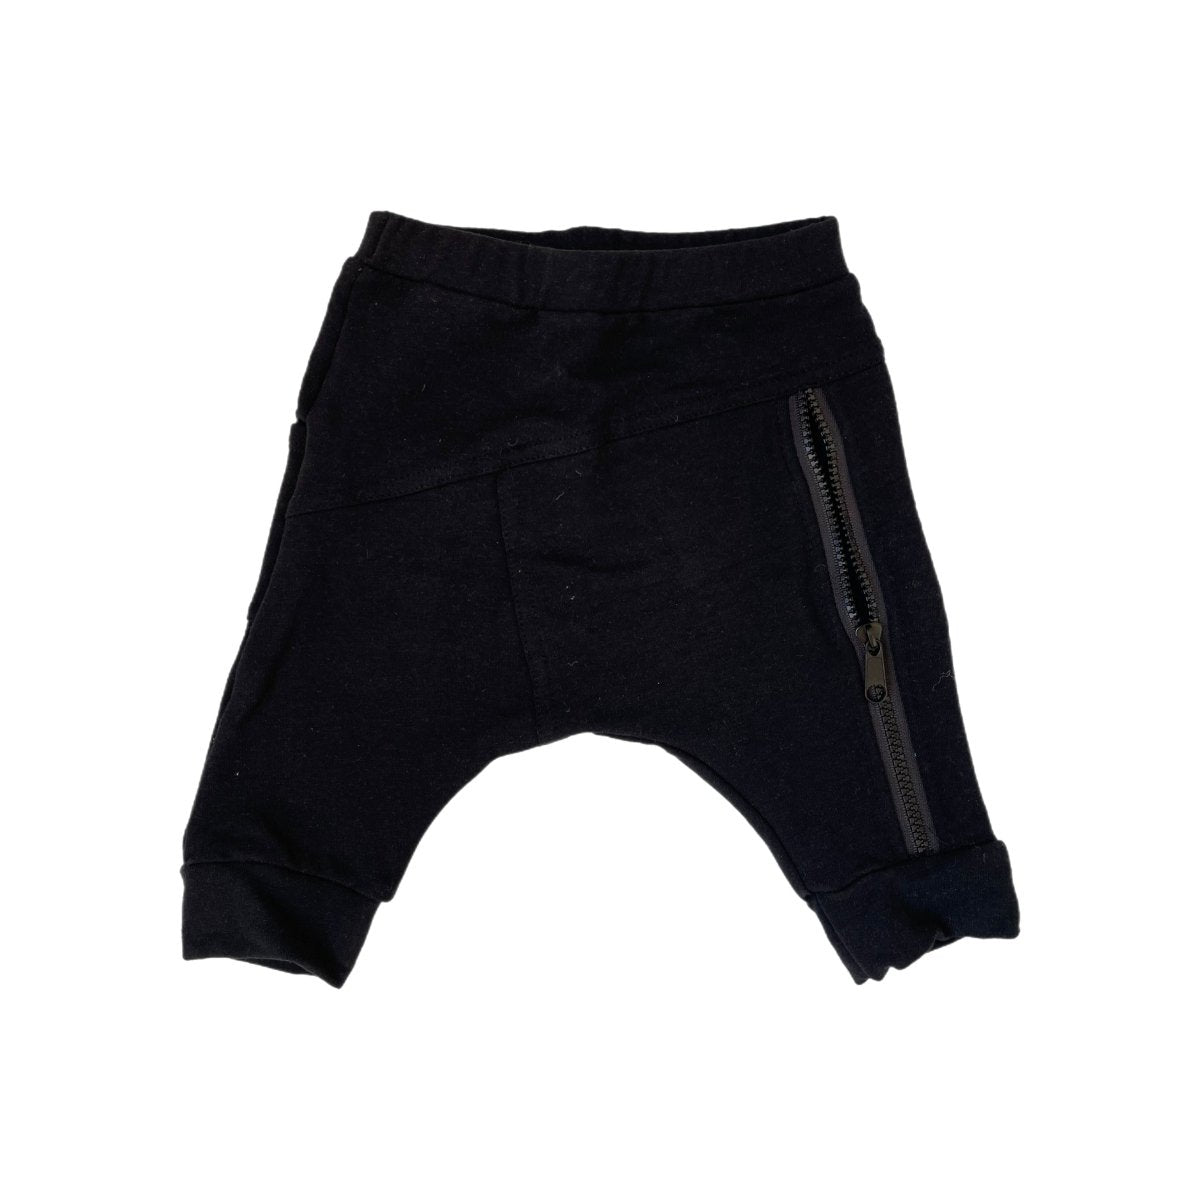 Harem Shorts - Black - Posh Kiddos